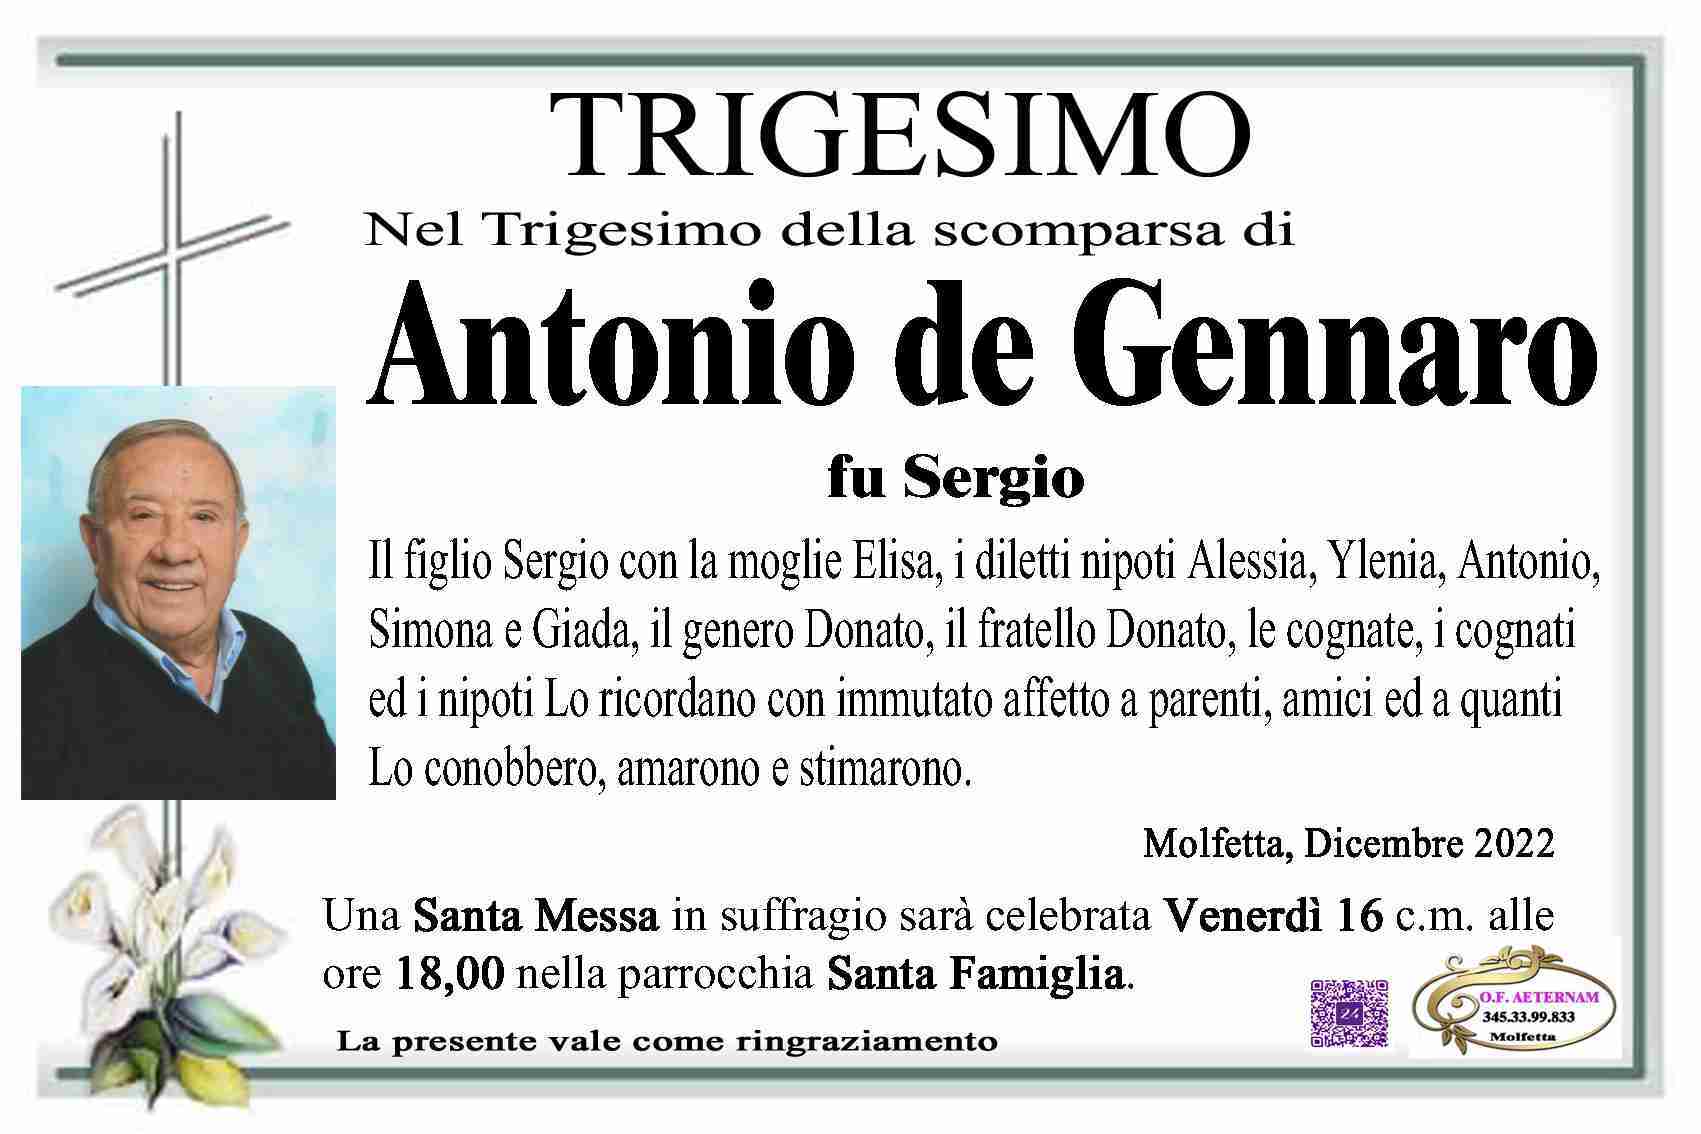 Antonio de Gennaro